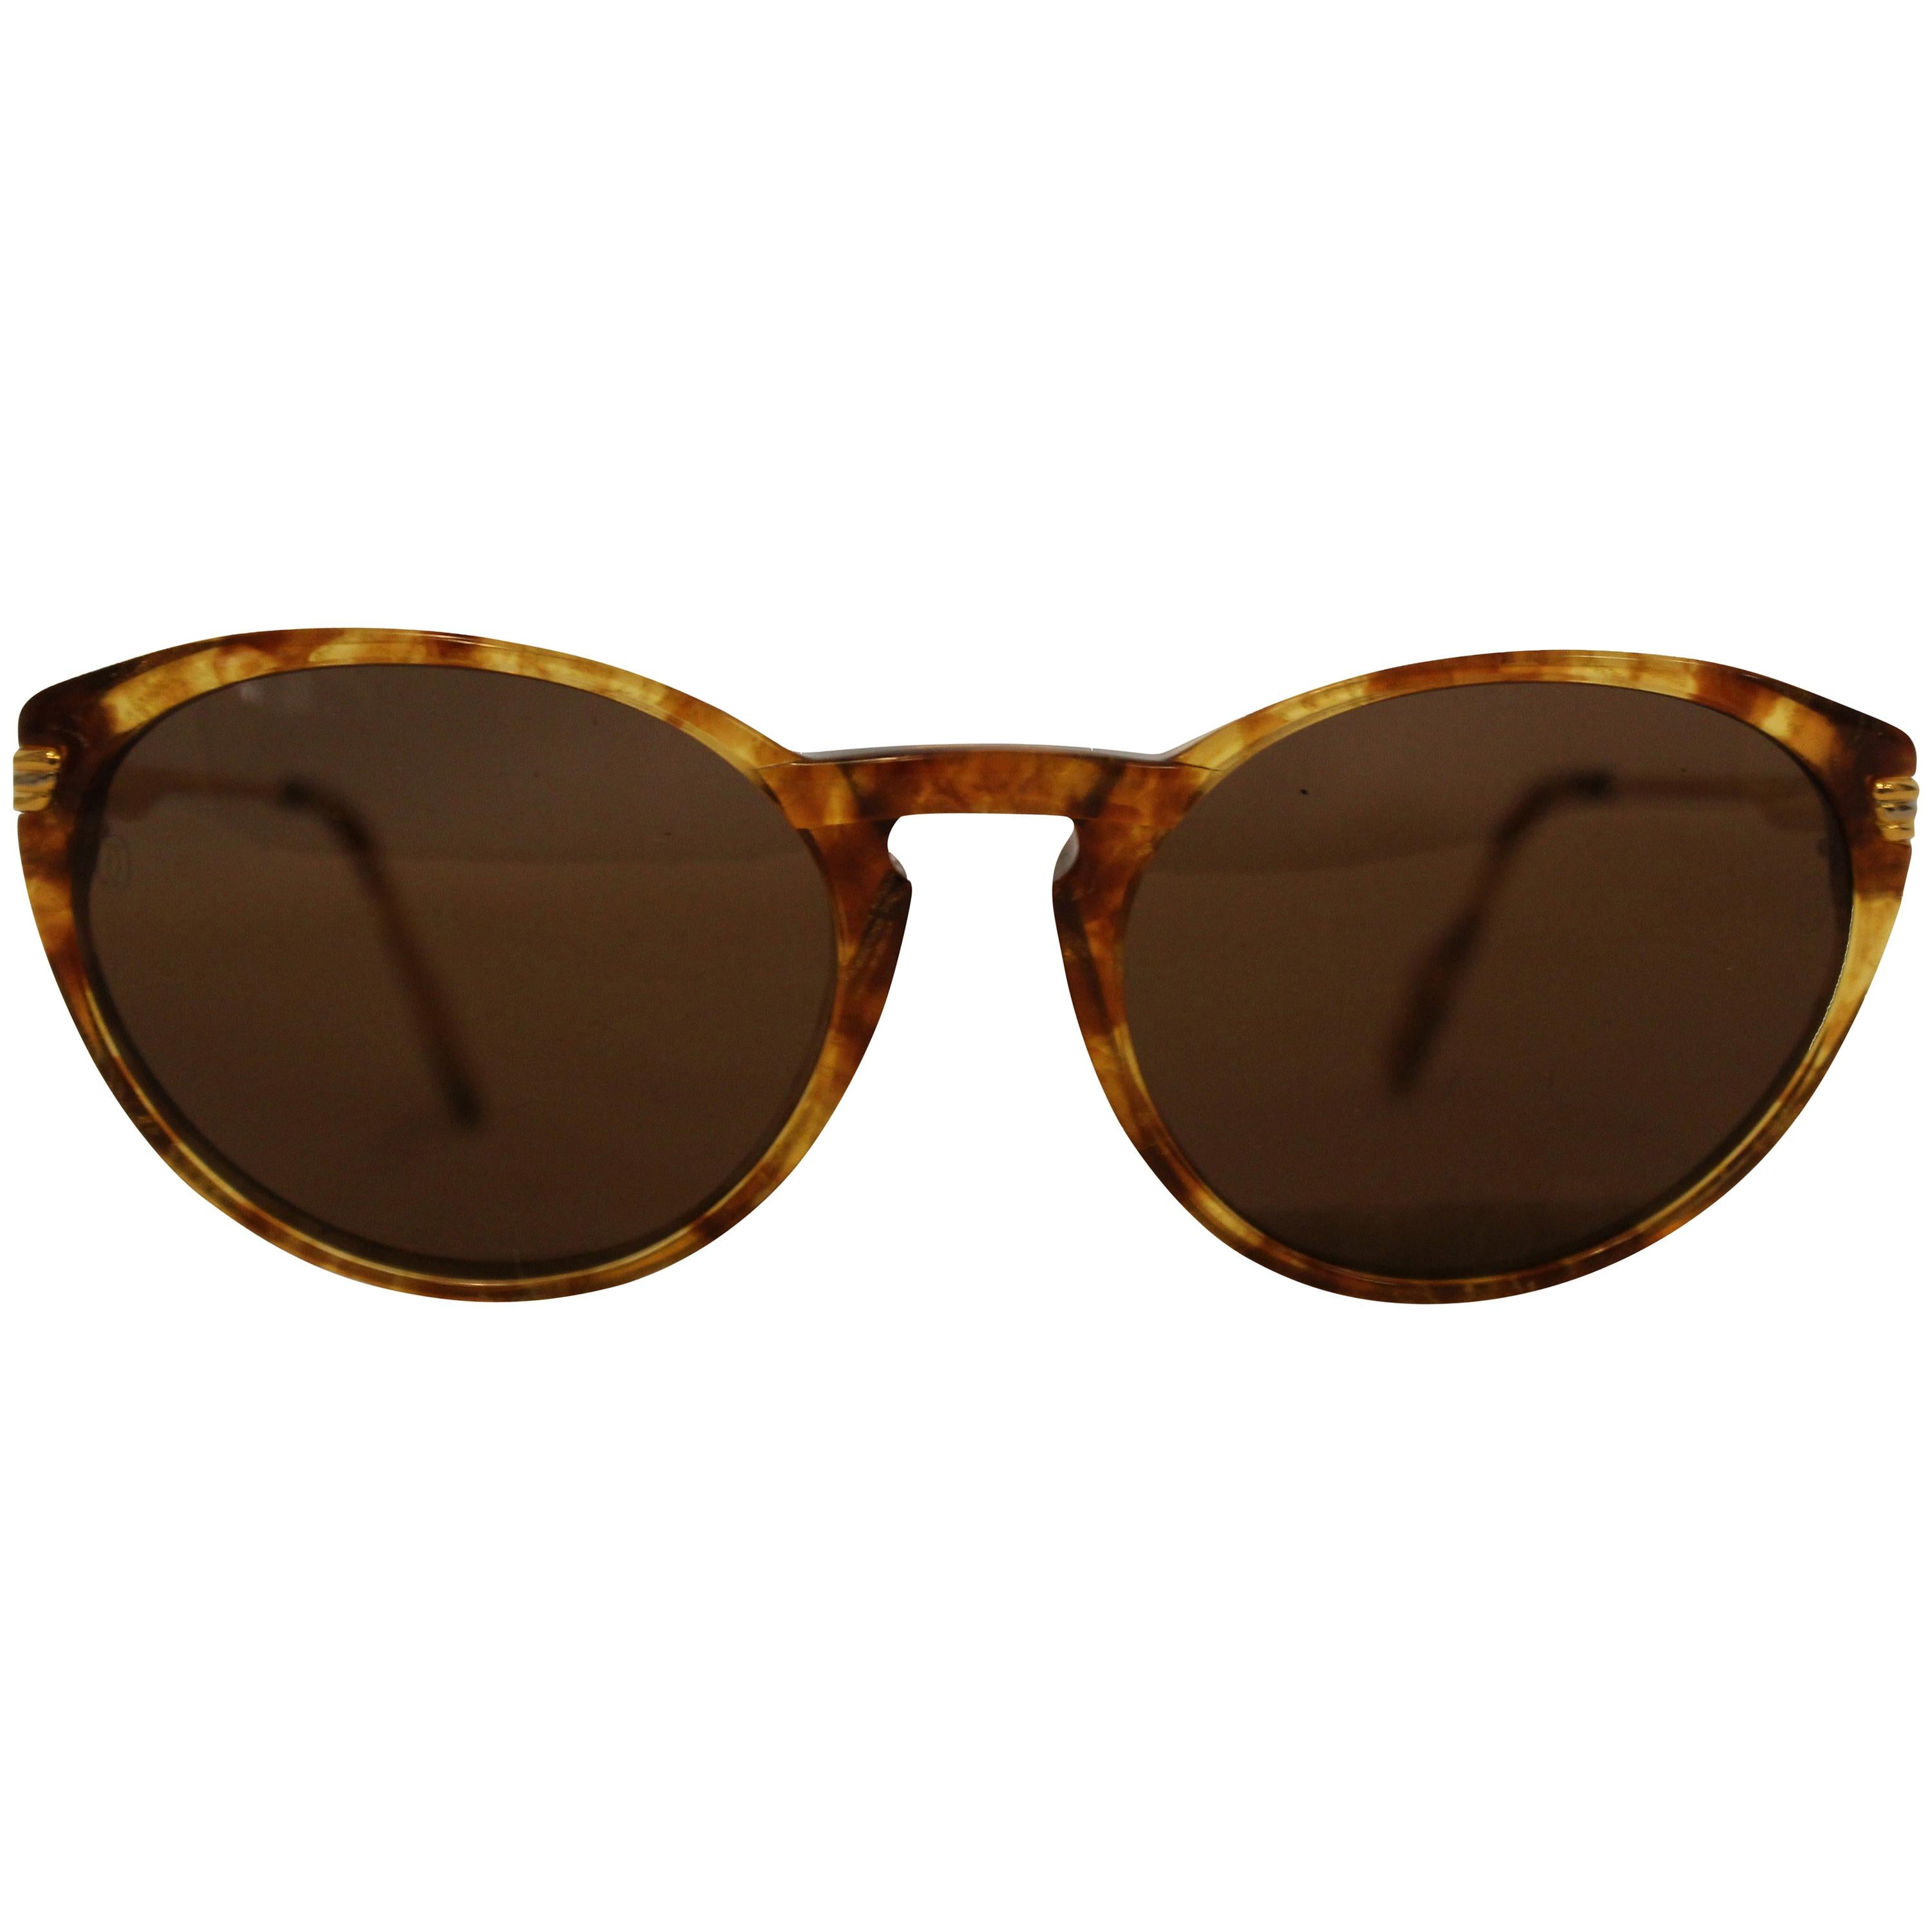 Cartier Tortoise Shell Motif Sunglasses  Gold Tone Details 135 Temples For Sale